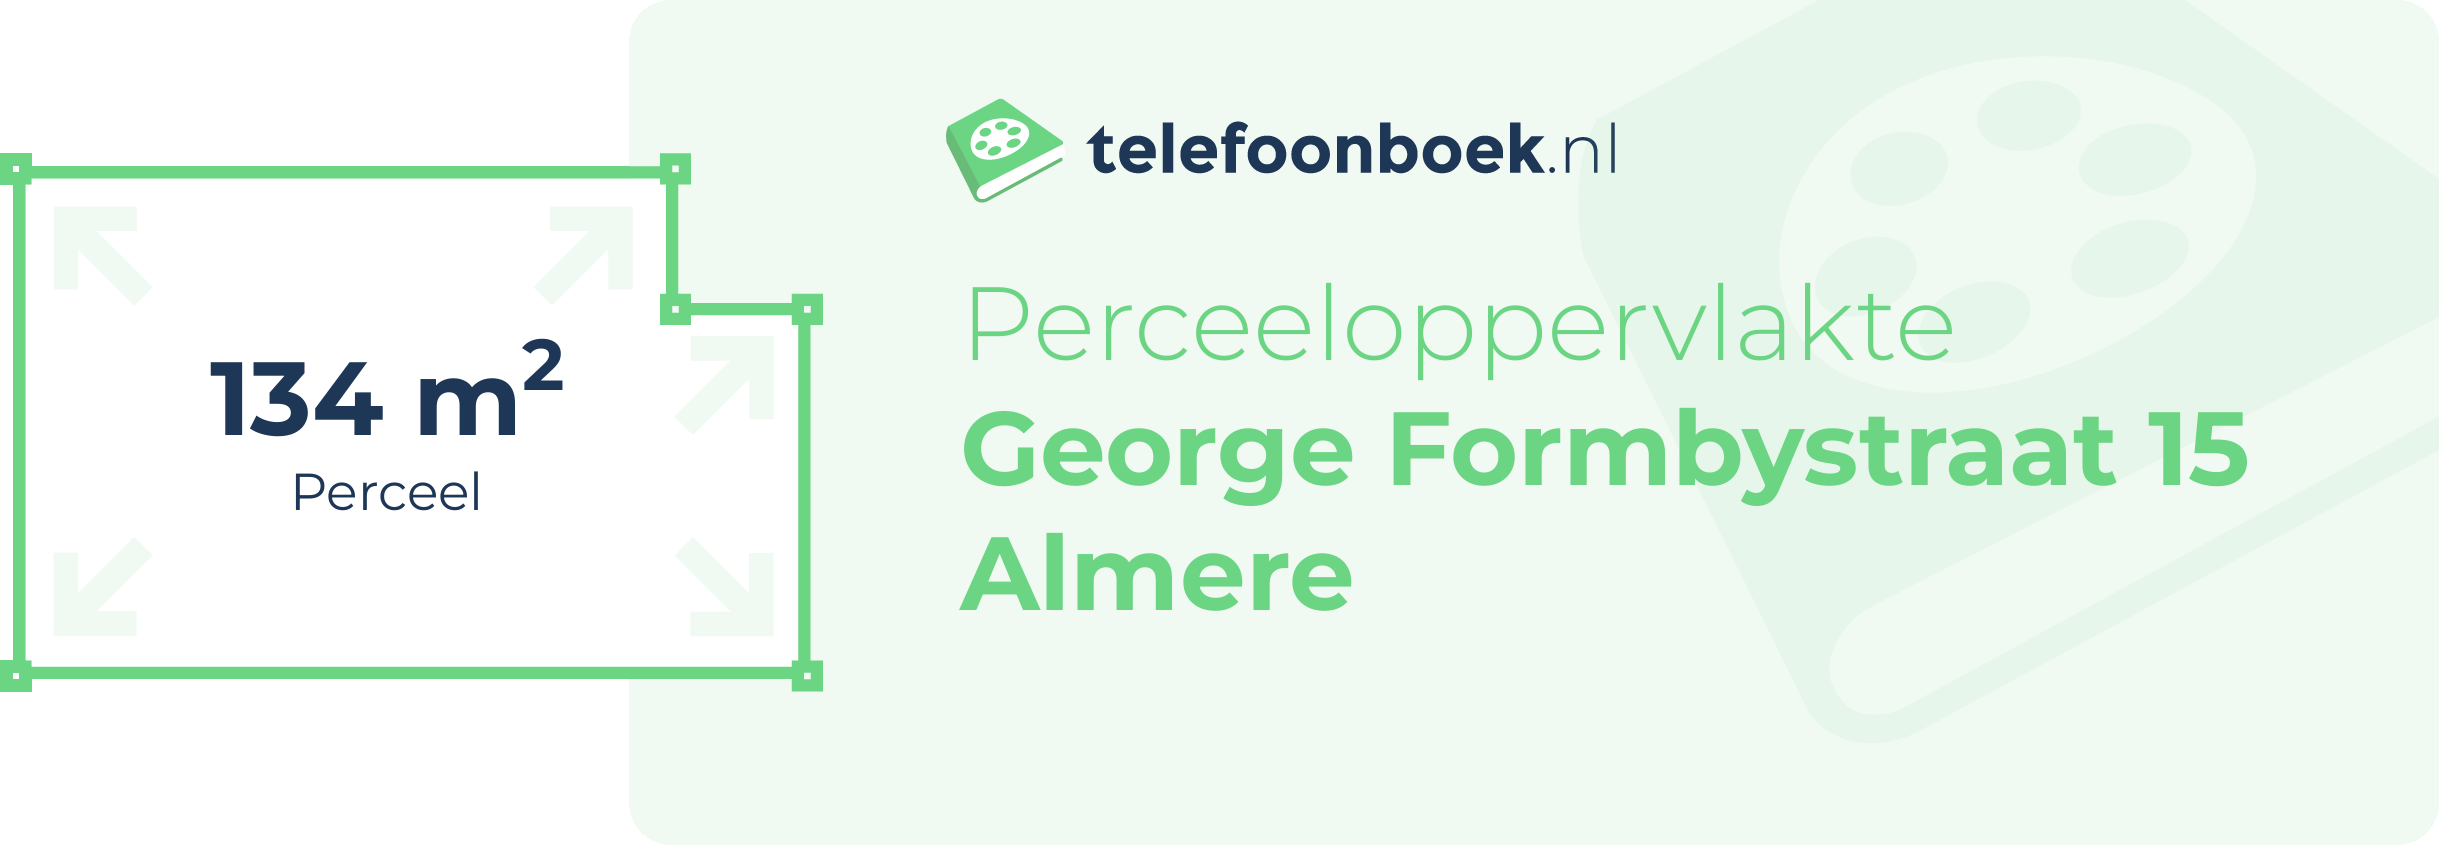 Perceeloppervlakte George Formbystraat 15 Almere